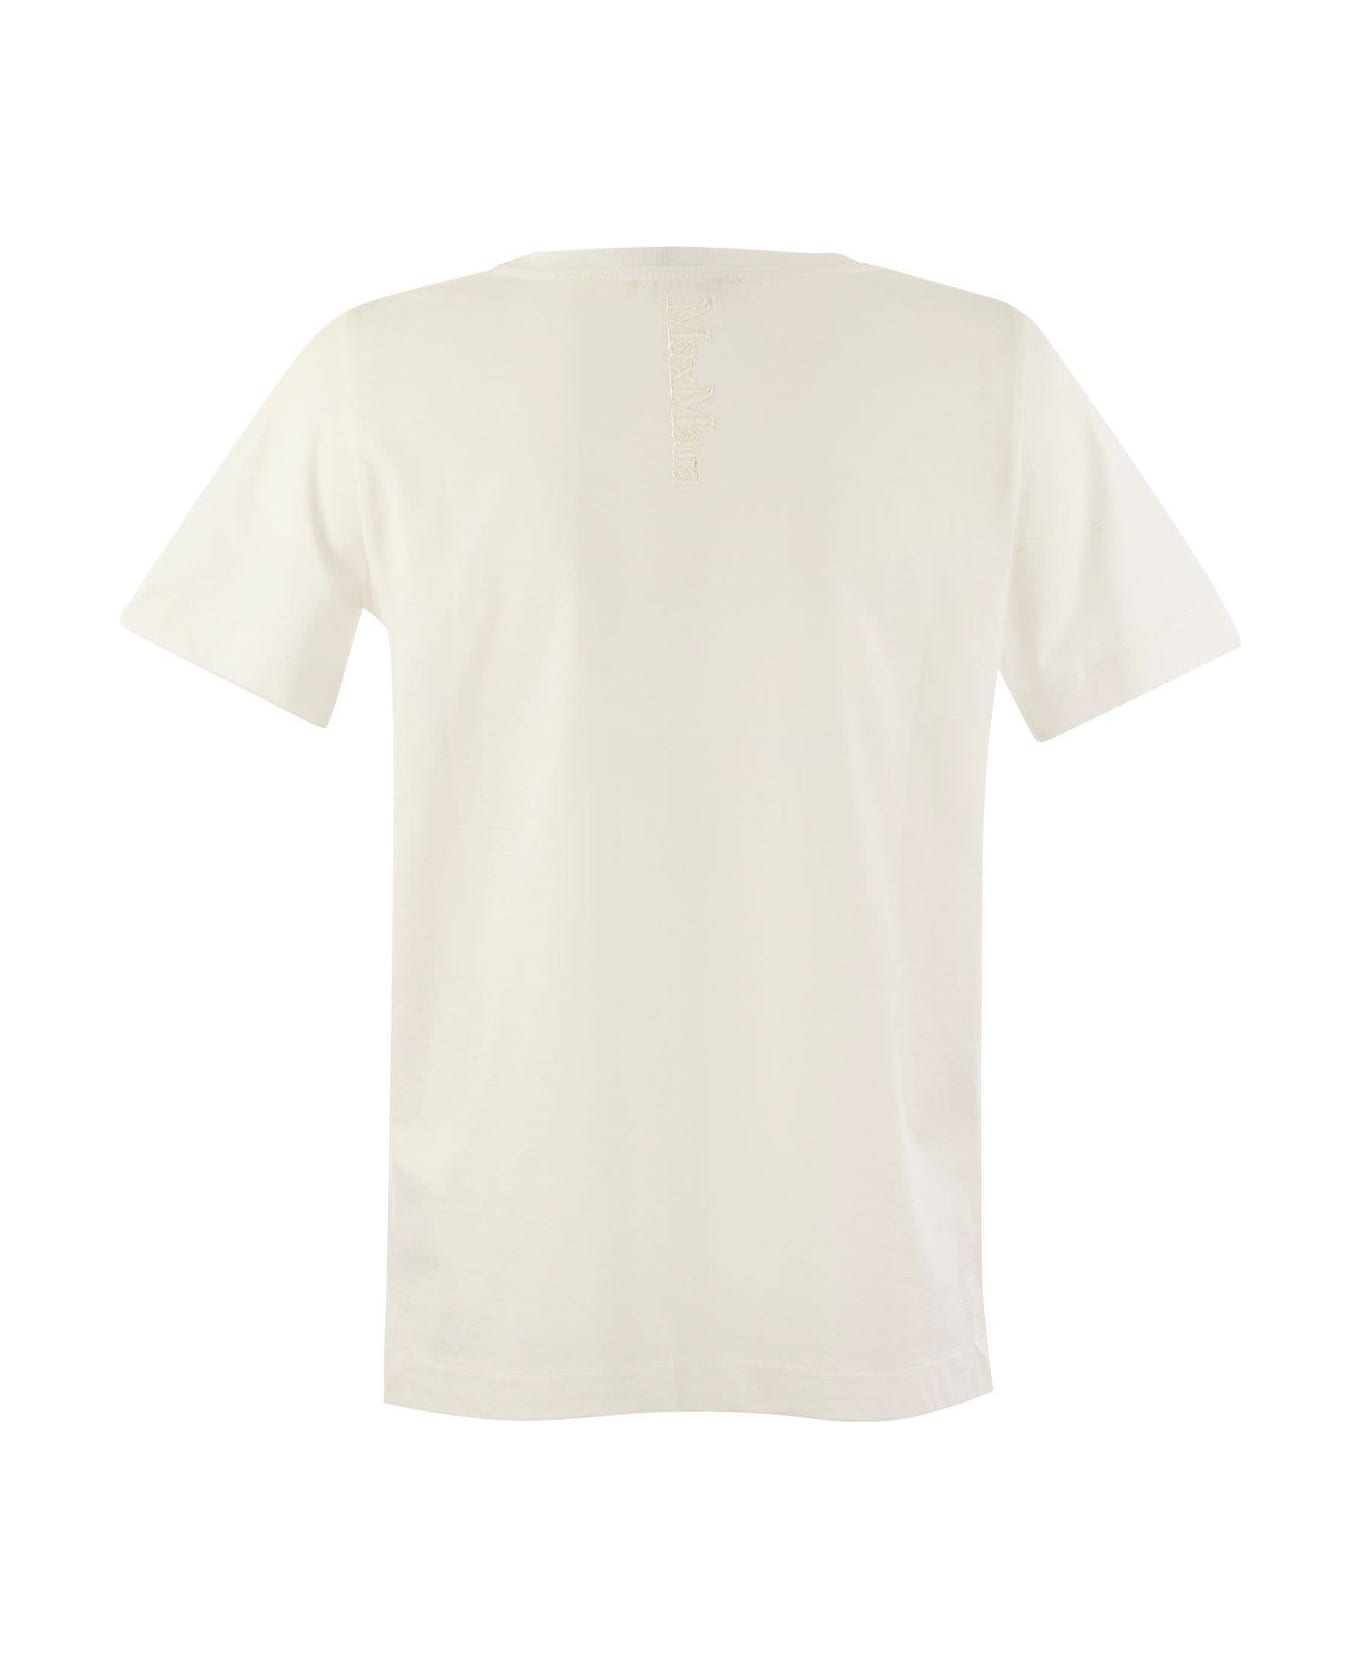 'S Max Mara V-neck Crewneck T-shirt - White Tシャツ